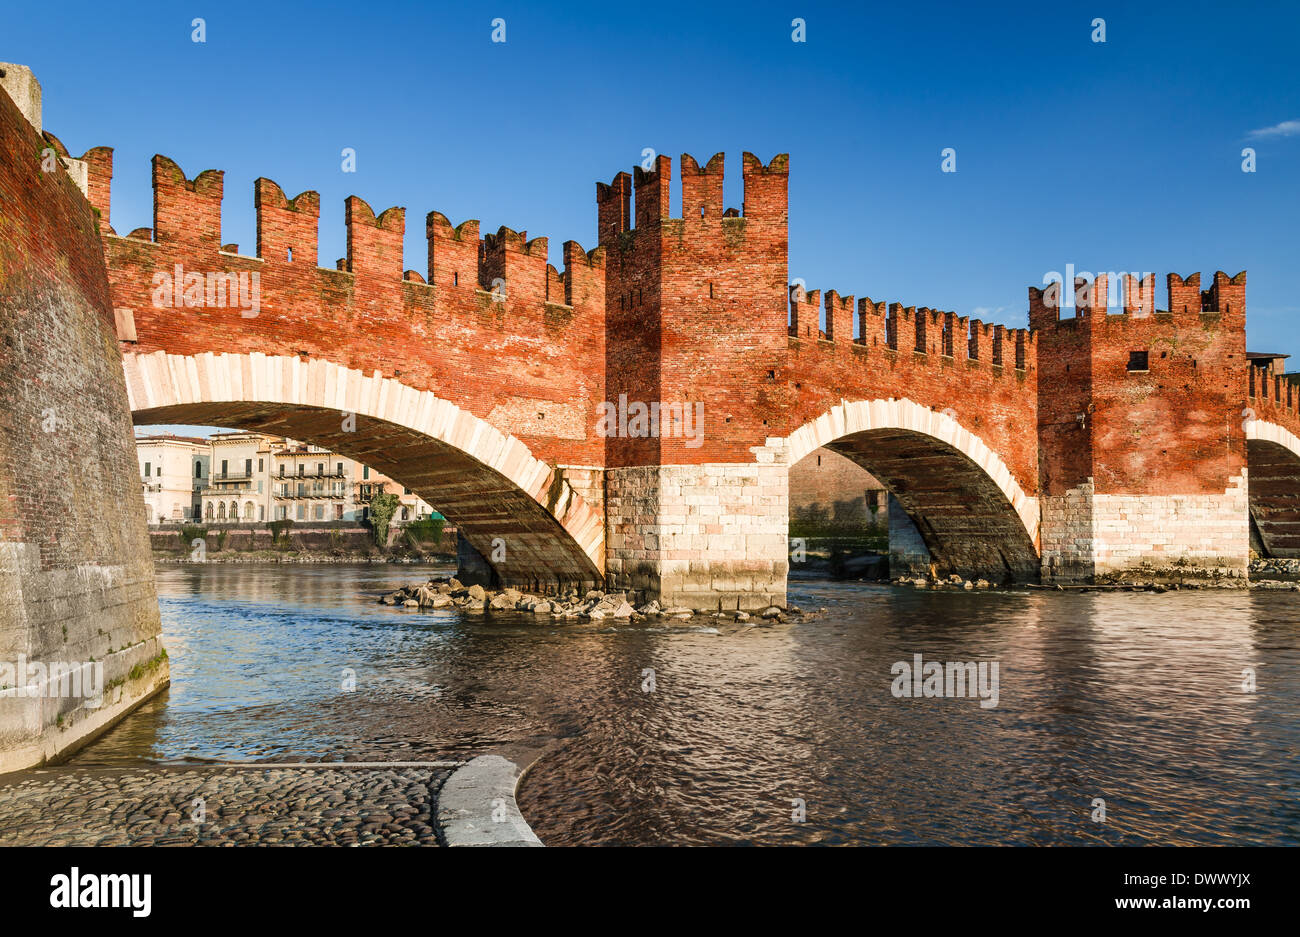 Verona, Italia. Fiume Adige e medievale ponte in pietra del Ponte Scaligero costruito nel XIV secolo nei pressi di Castelvecchio. Foto Stock